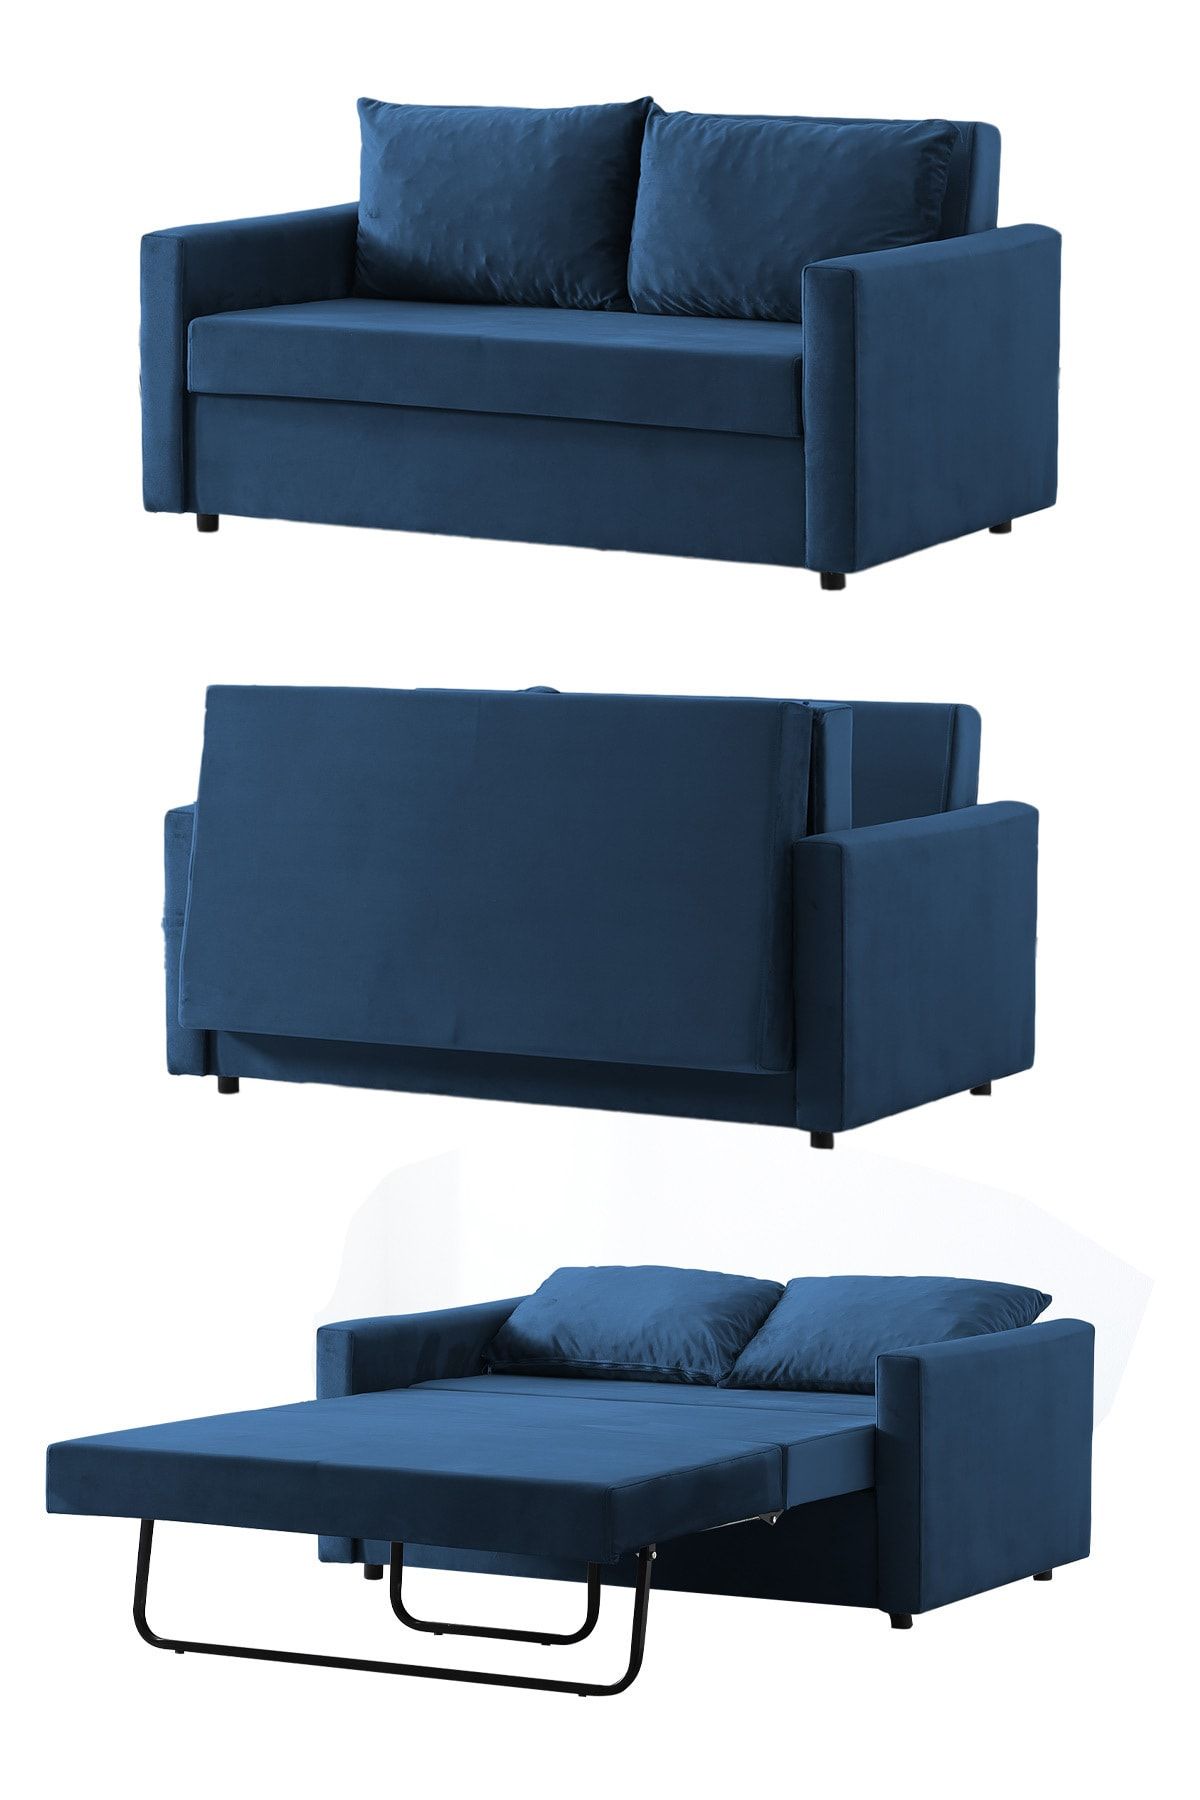 ipek mobilya Delfi Iki Kişilik Yatak Olabilen Koltuk - Refakatçı Koltuğu ( Mavi )